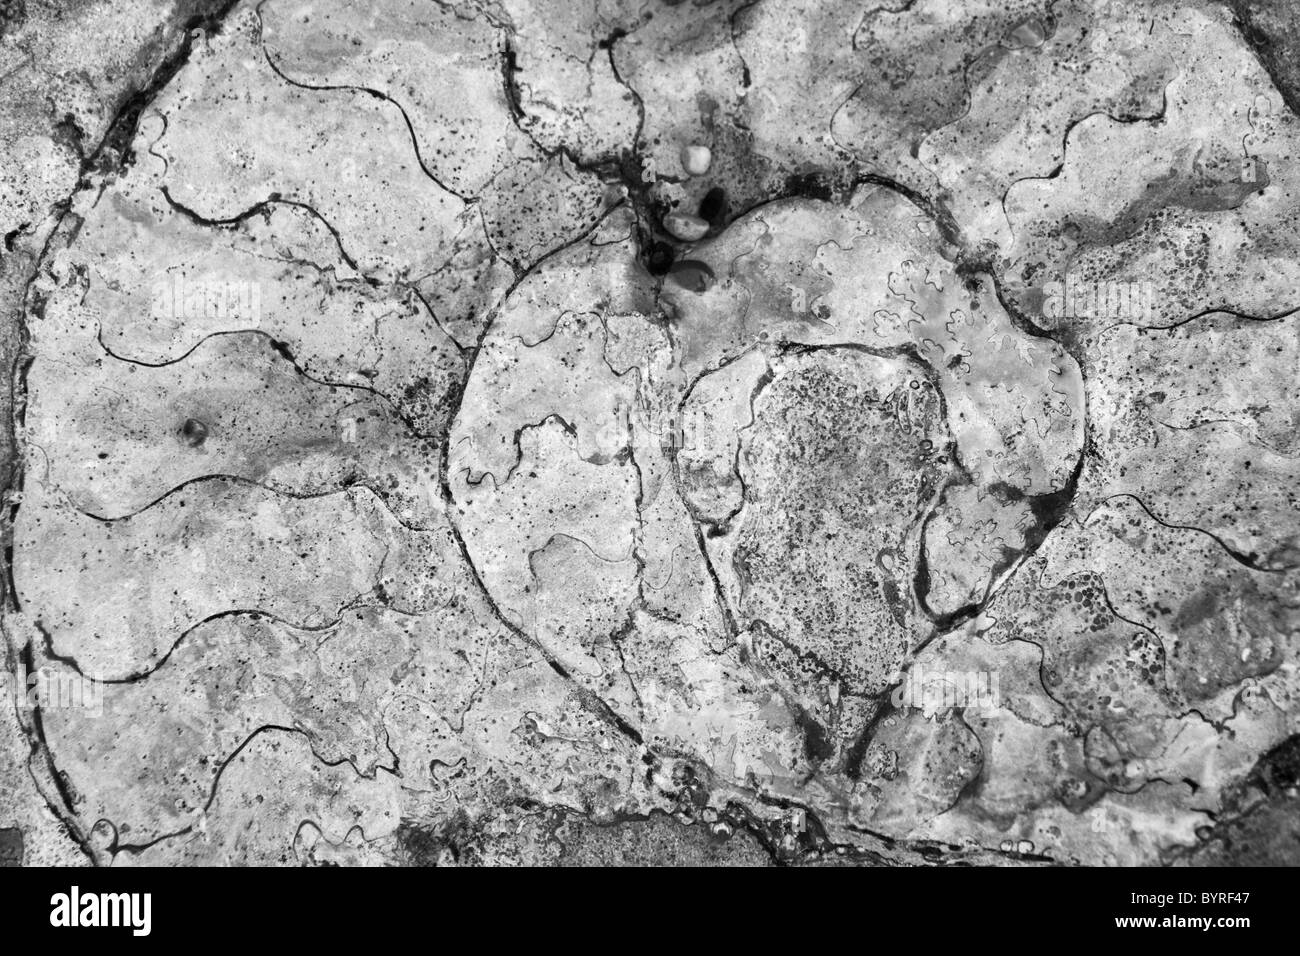 Un fósil de ammonites encontrados en la costa Jurásica de Dorset, Inglaterra Foto de stock